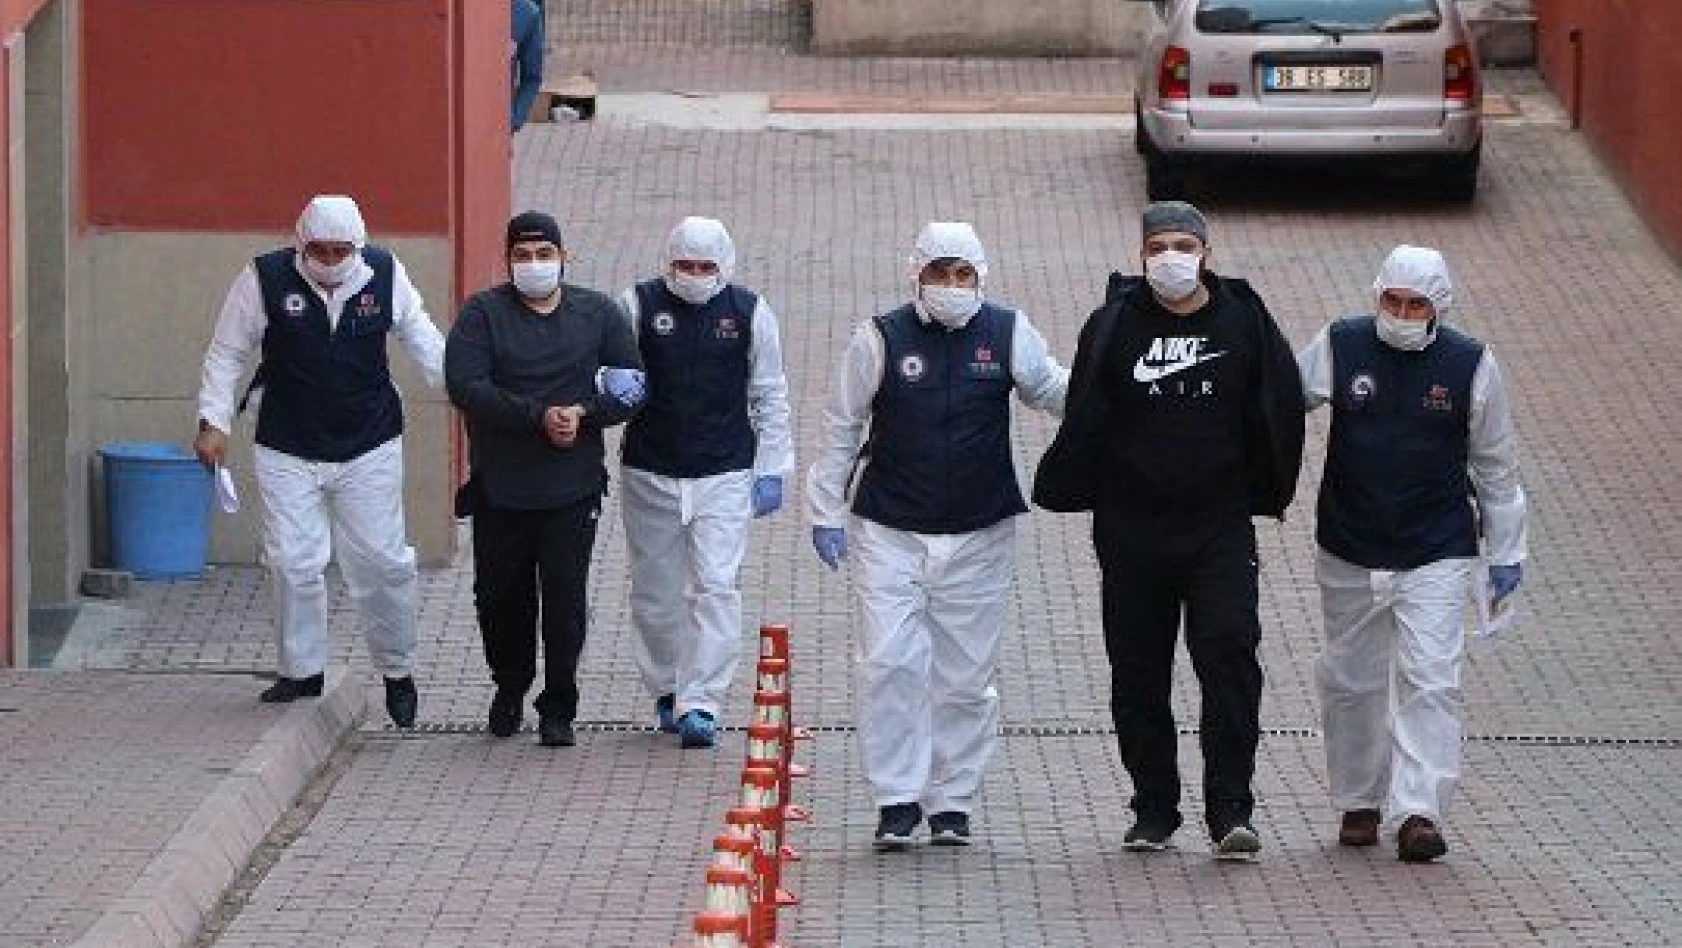 Suriye'deki terör gruplarıyla bağlantılı 2 şüpheli yakalandı Kayseri'de, Suriye'deki terör gruplarıy